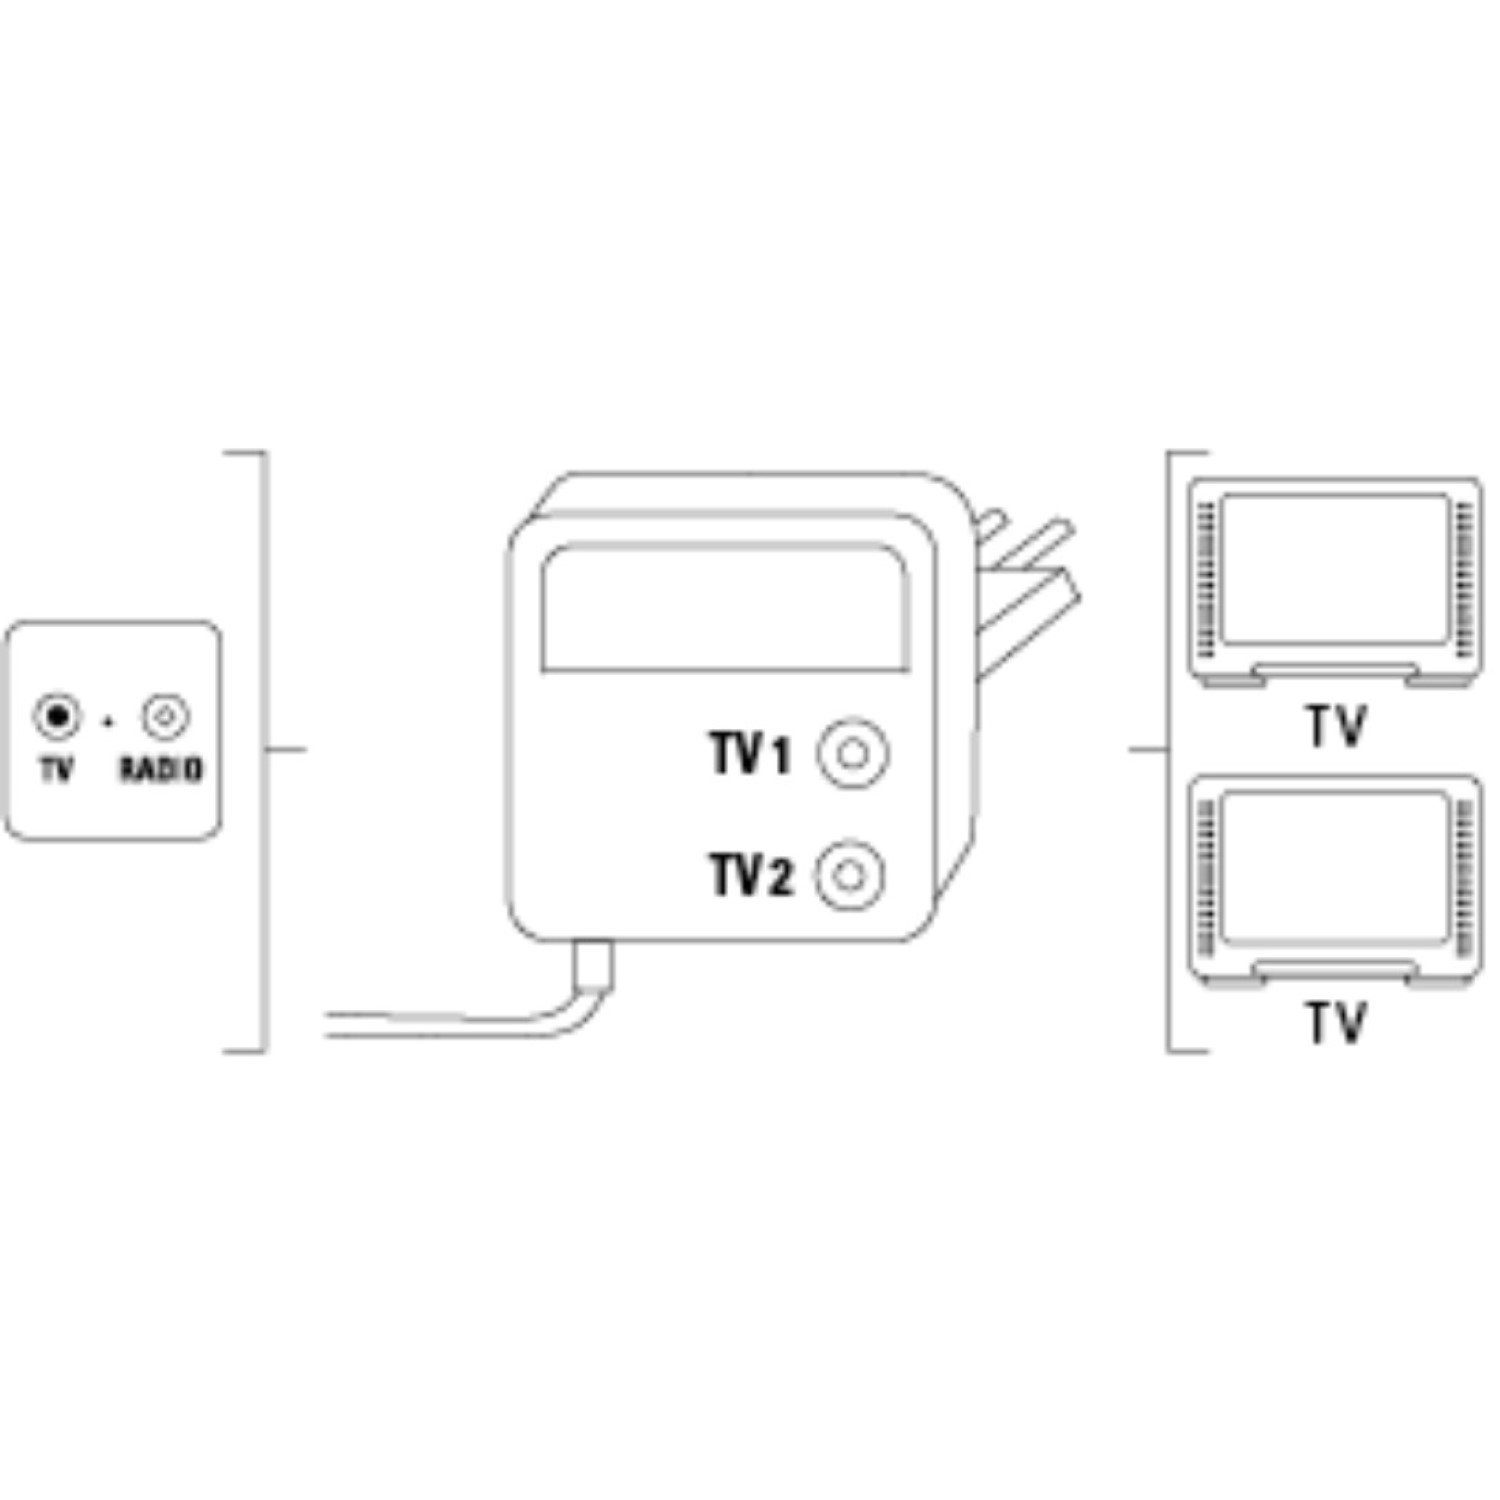 (TV DVB-T2 Antennen-Verstärker Splitter Hama Verstärker Verteil-Verstärker Verteiler TV Kabel) Audioverstärker 2-Fach 2-Port Digital